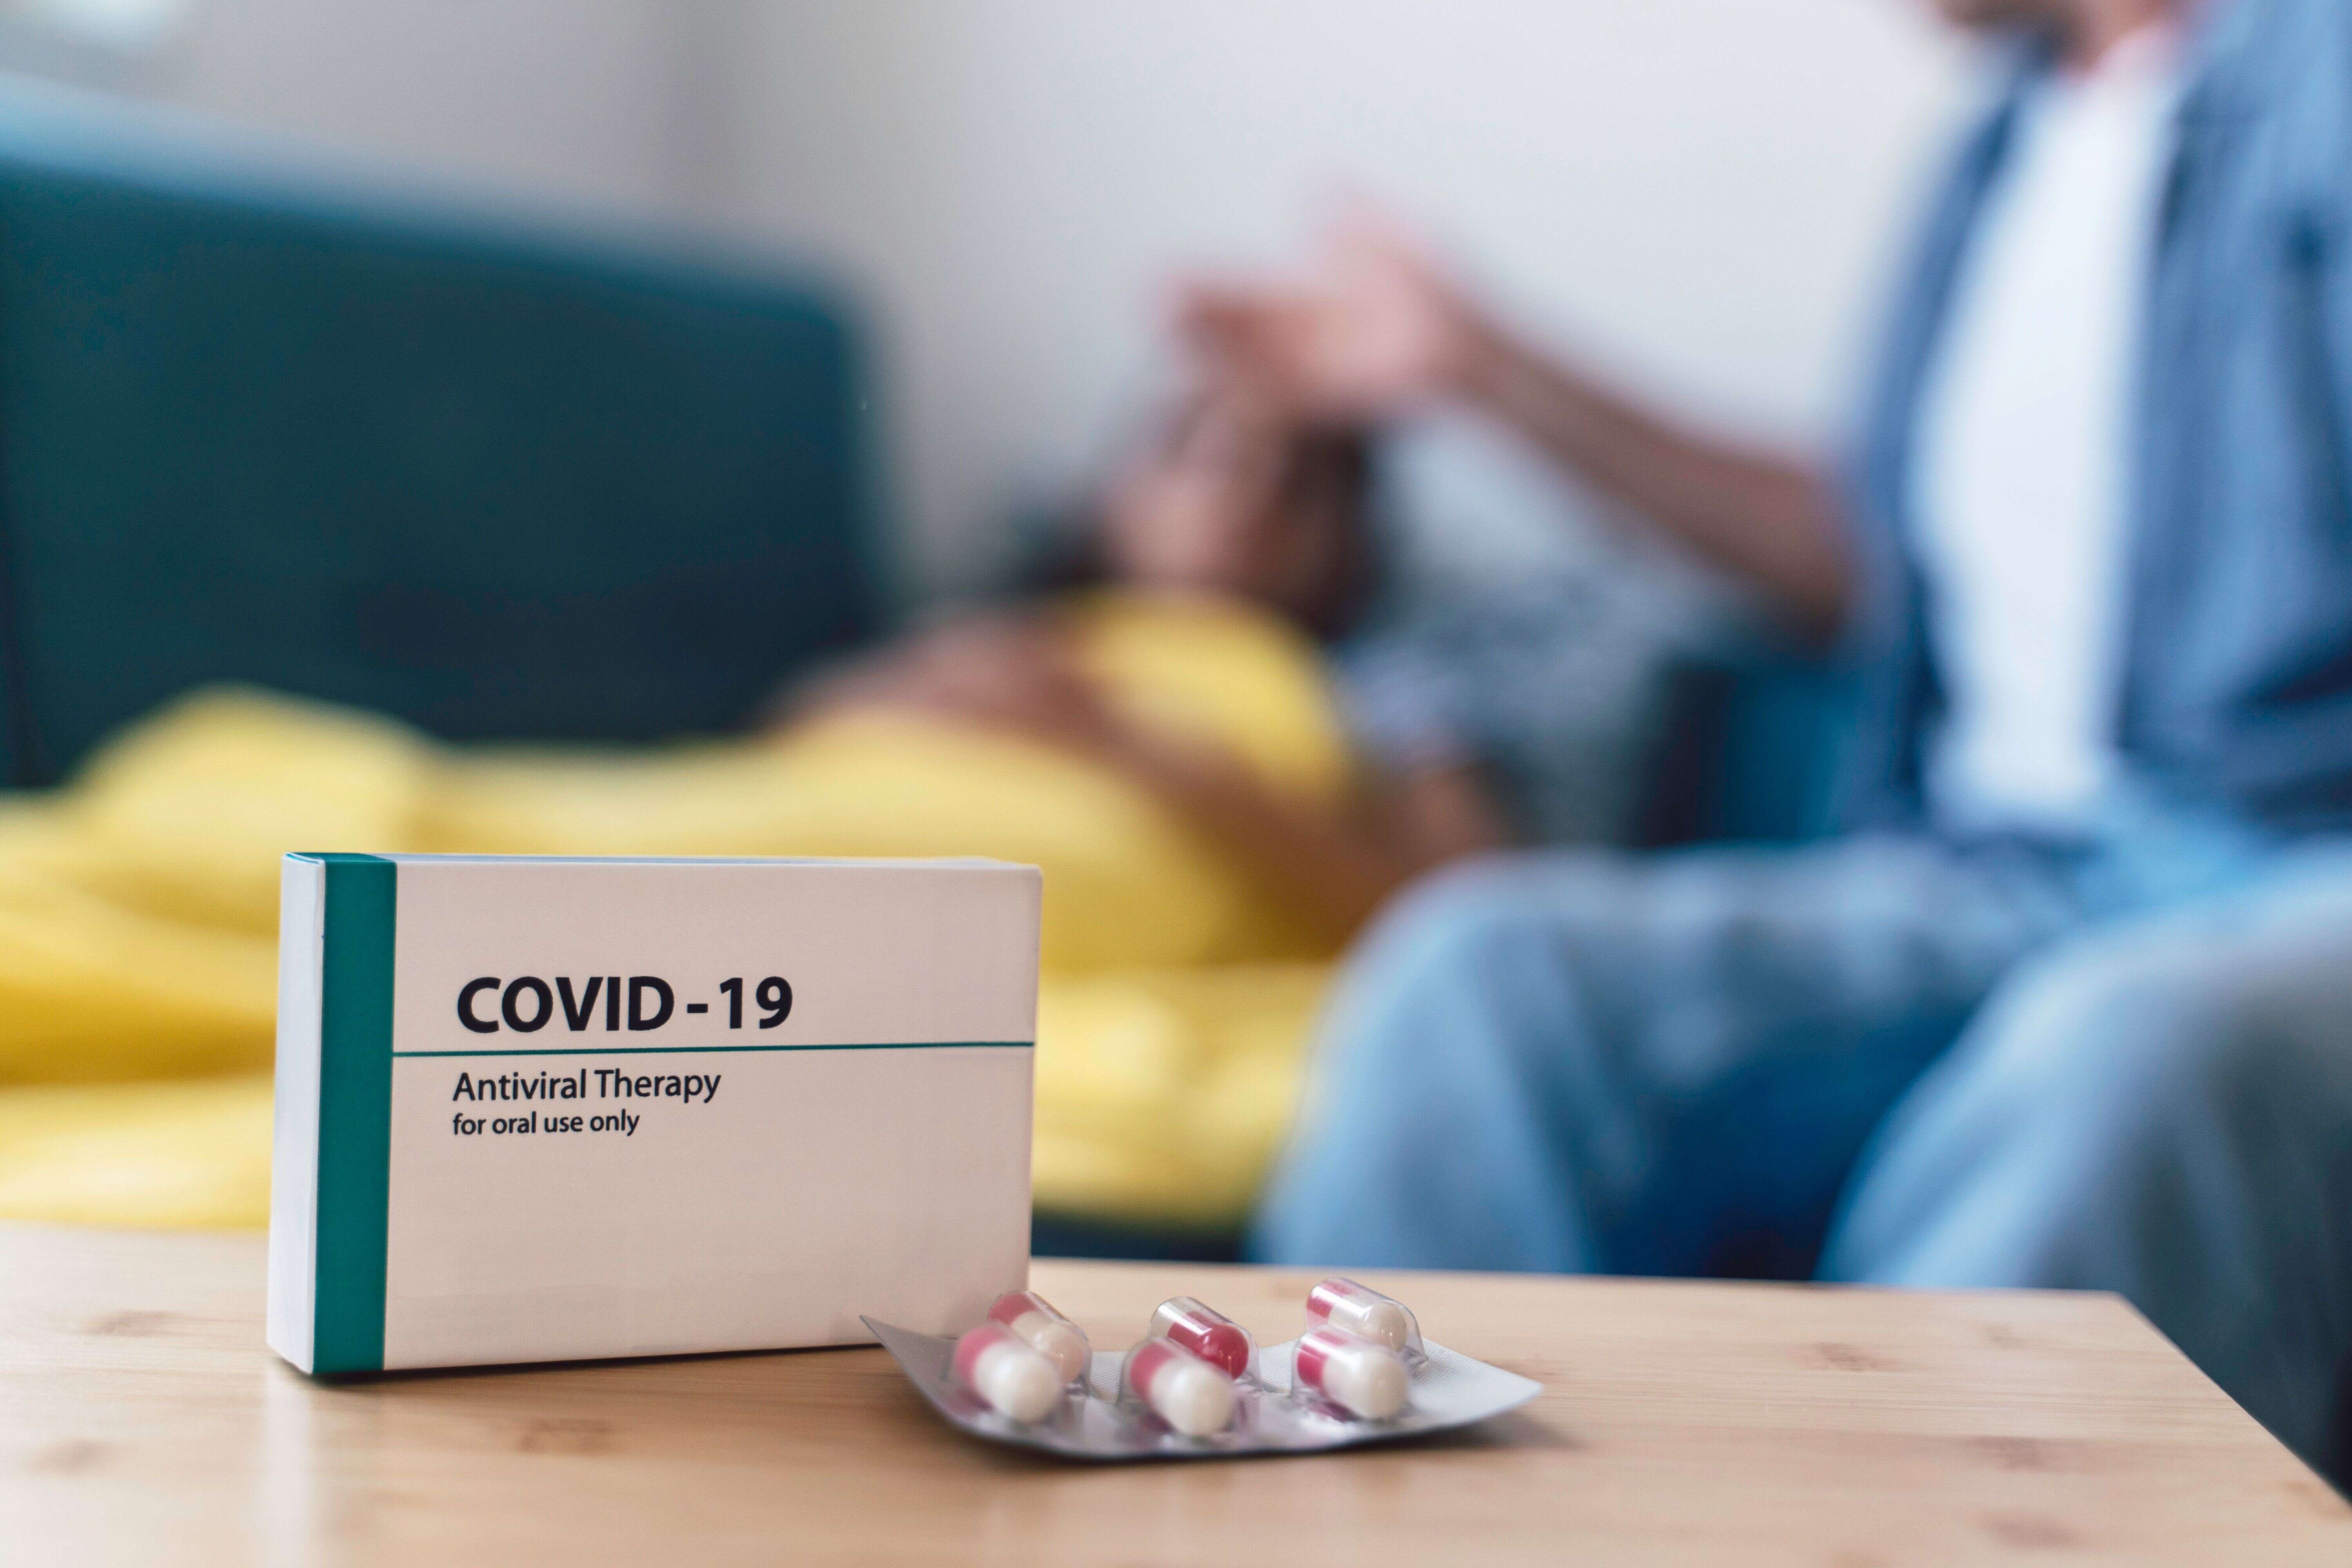 Le molnupiravir, une pilule anti Covid, permet de réduire les formes graves de 30%, selon les résultats définitifs d'un essai clinique réalisé par le laboratoire Merck.